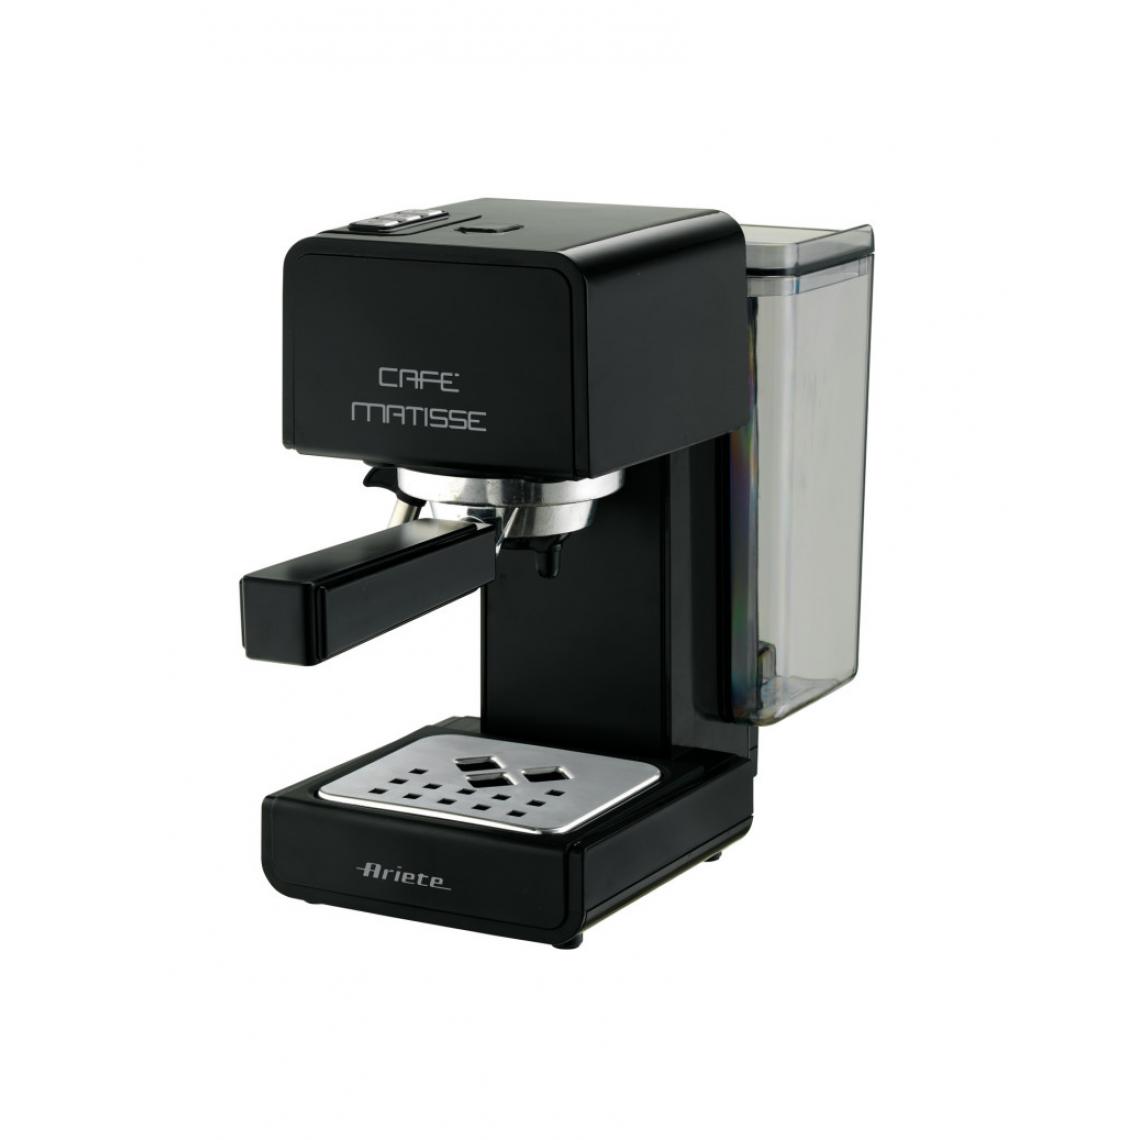 Ariete - Machine à café Caffe Matisse Ariete (Groupe De'Longhi) - modèle 1363 - Expresso - Cafetière